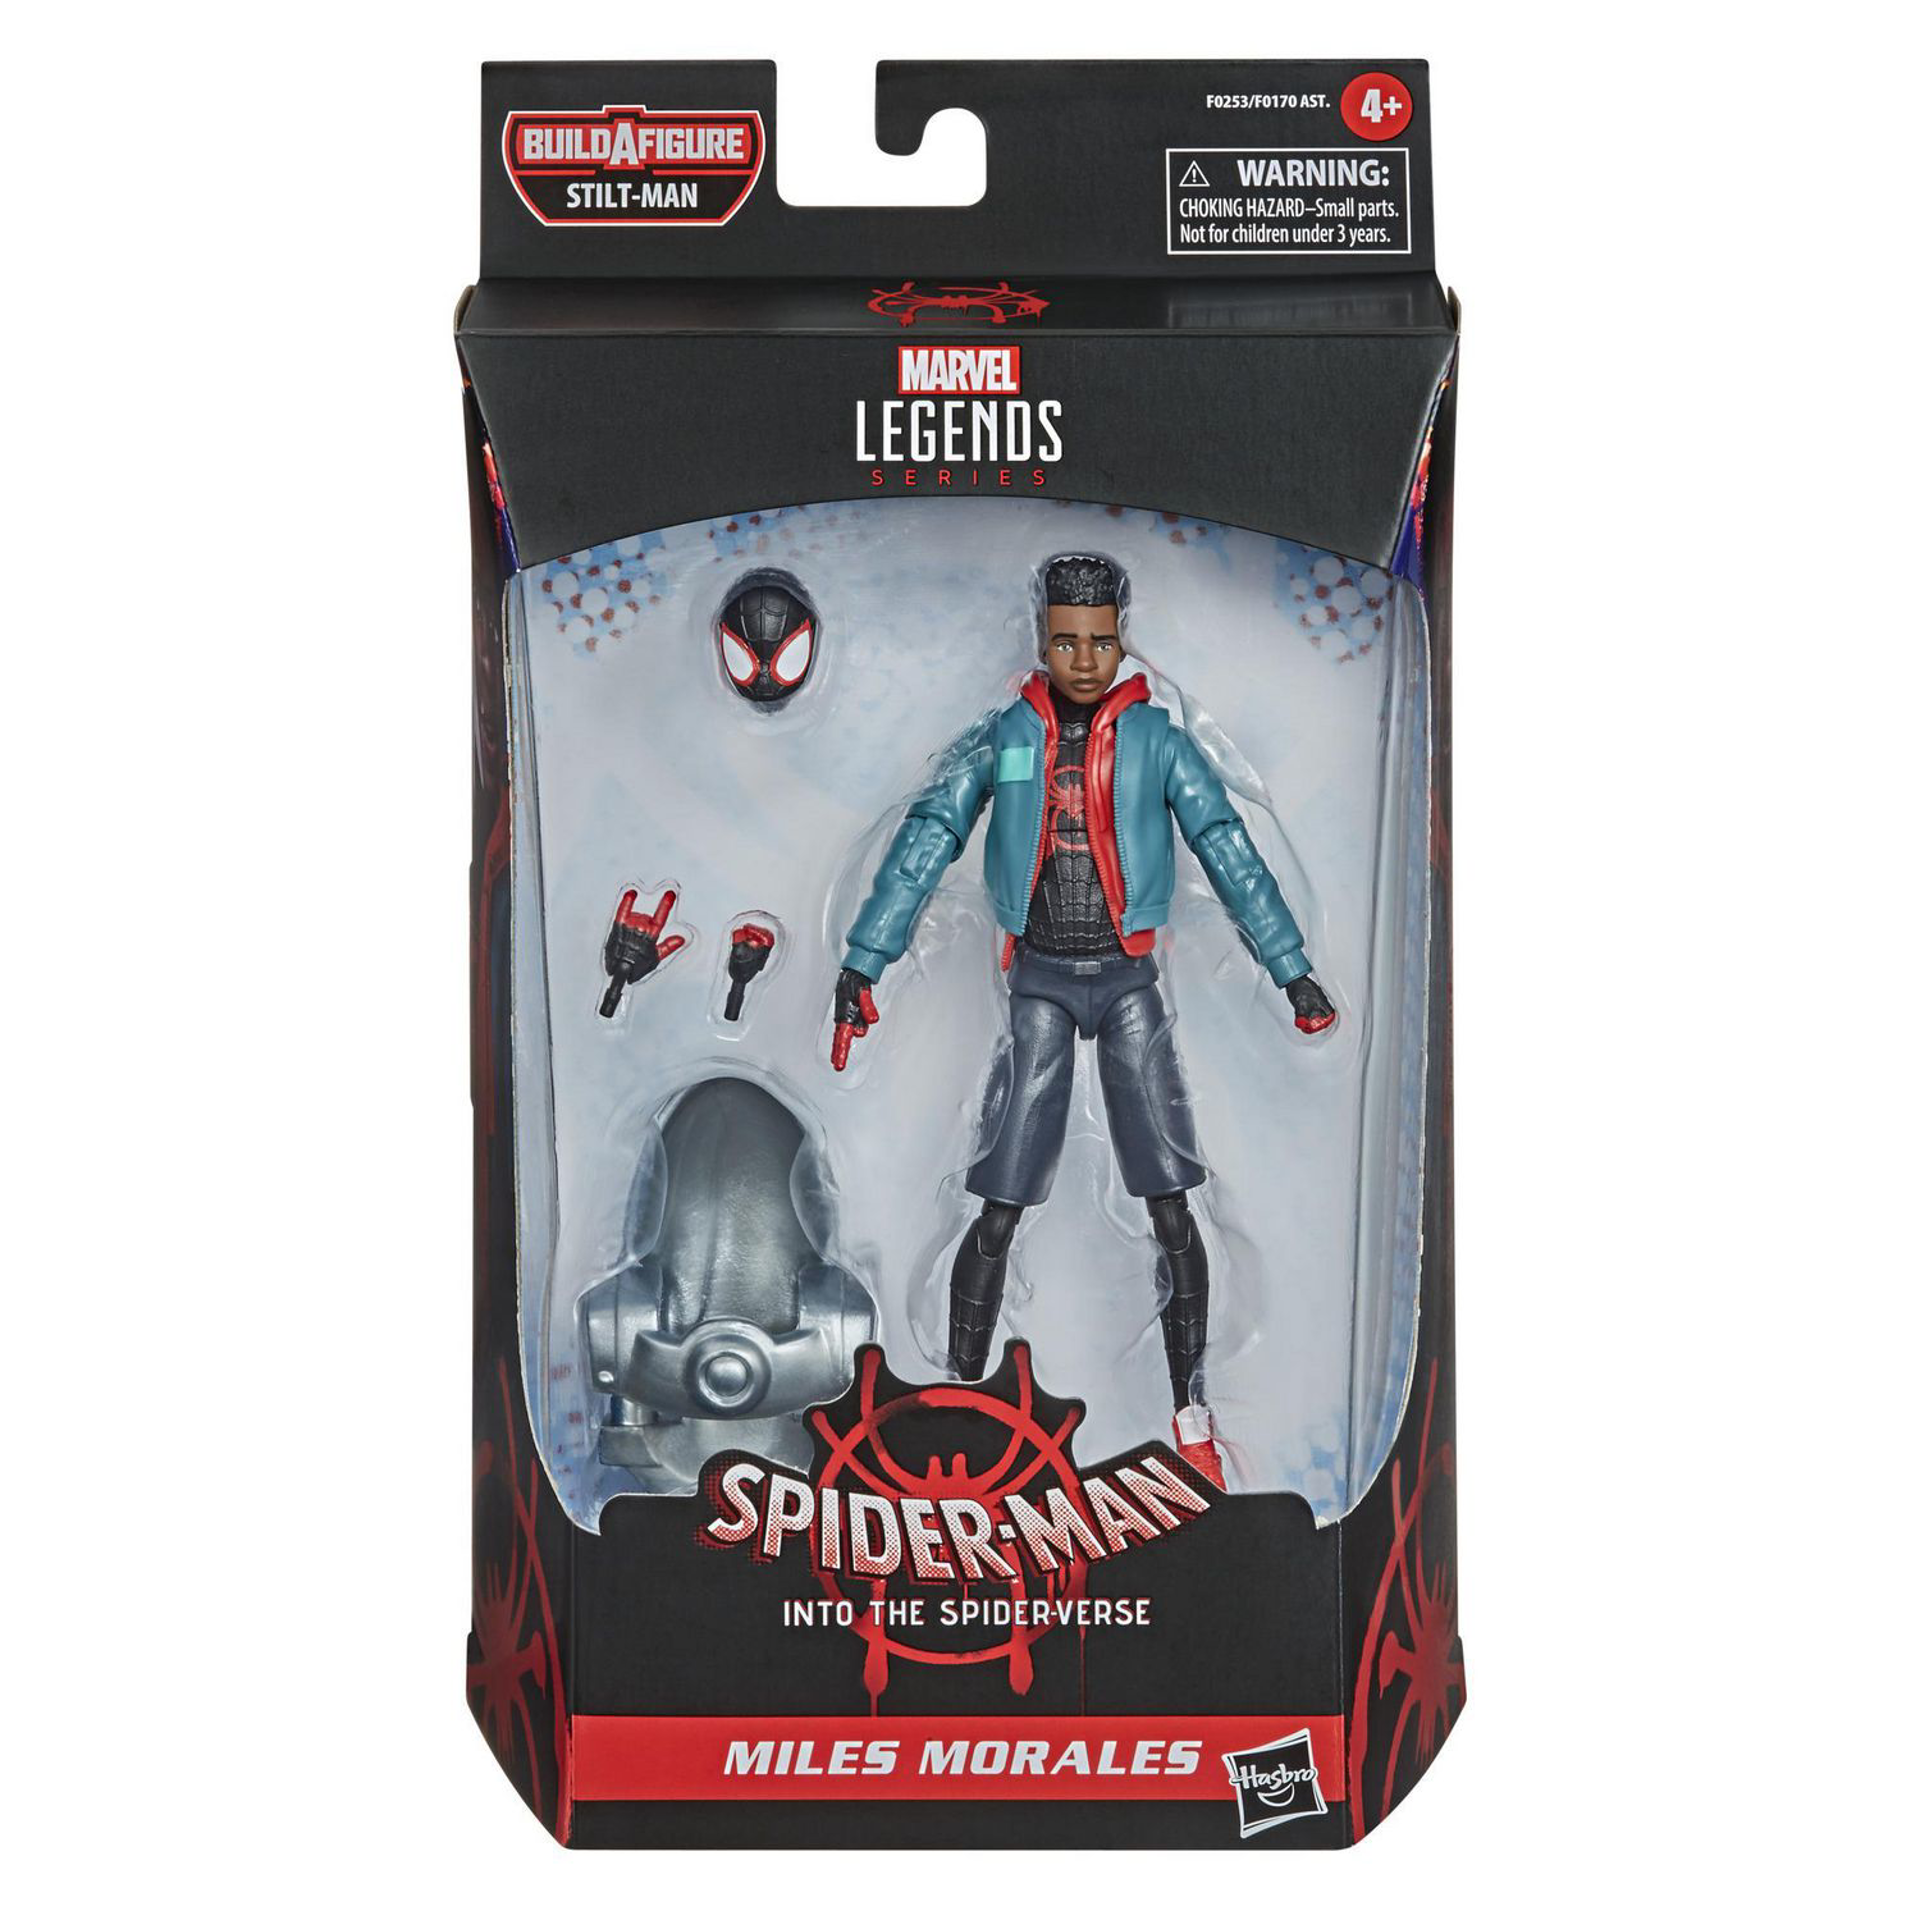 Marvel Legends Series - Build-A-Figure Série Silt-Man - Spider Man : New Generation Figurine d'action de Miles Morales 15cm